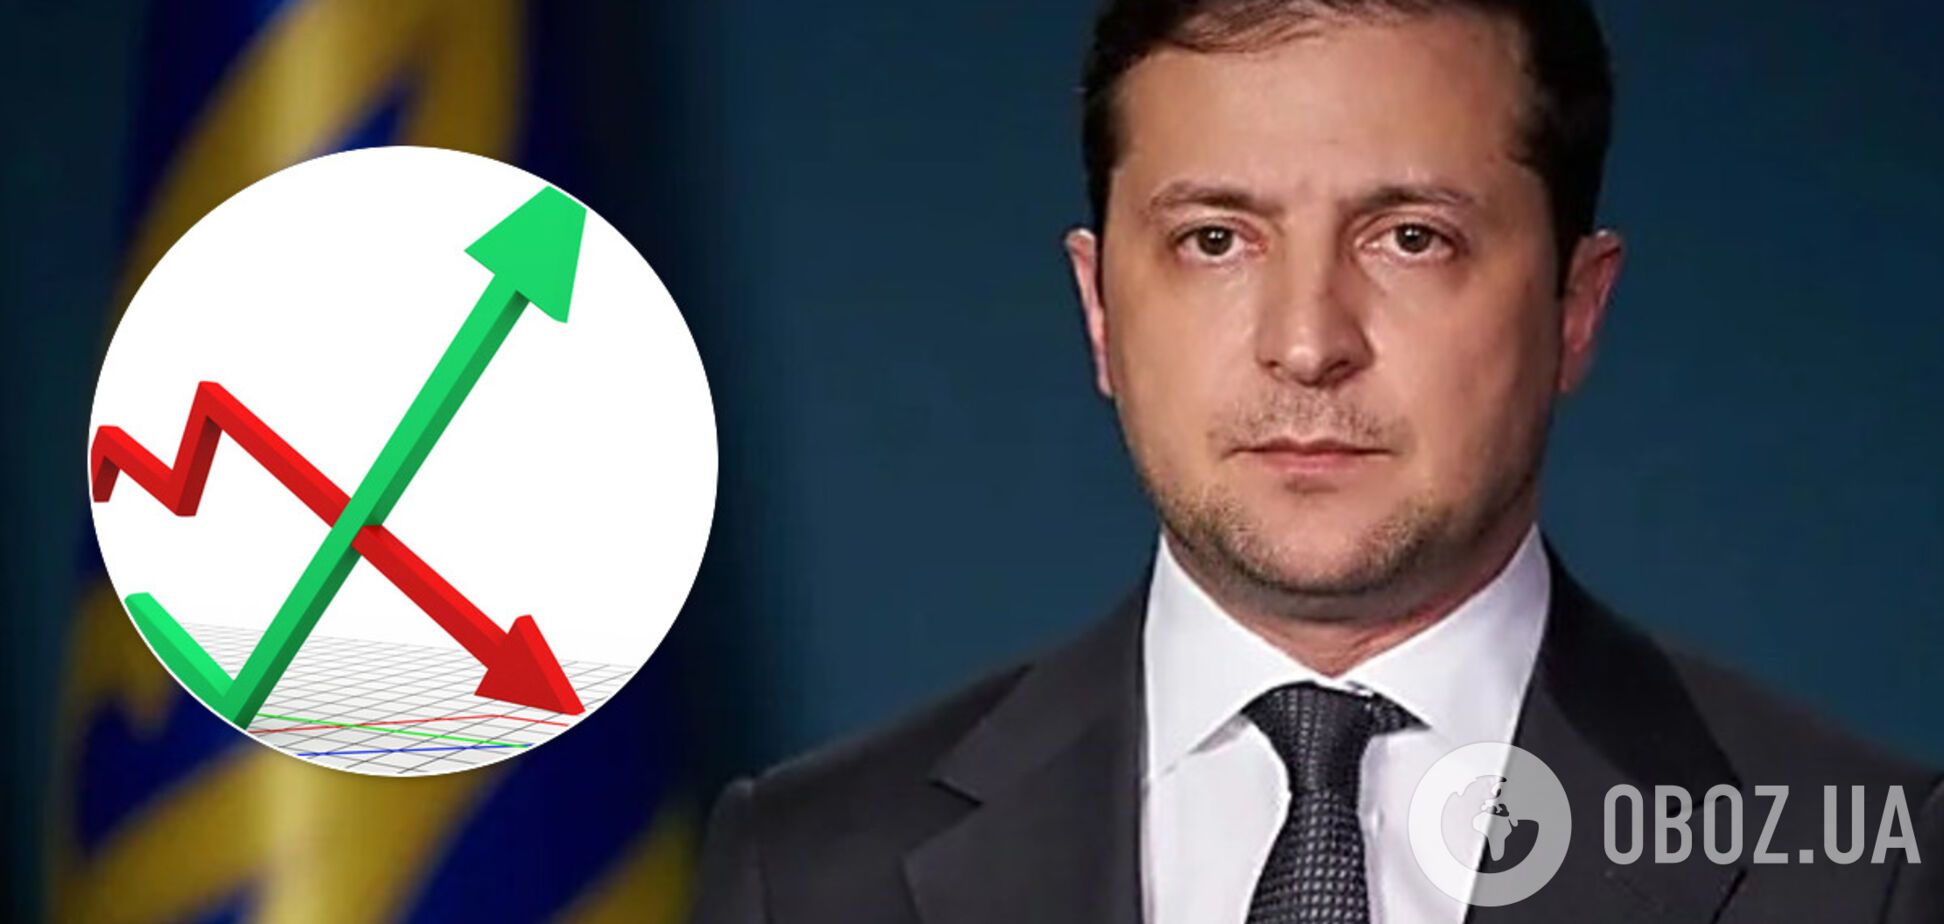 Зеленскому доверяют 57% украинцев, считают его лучшим президентом 16% – опрос